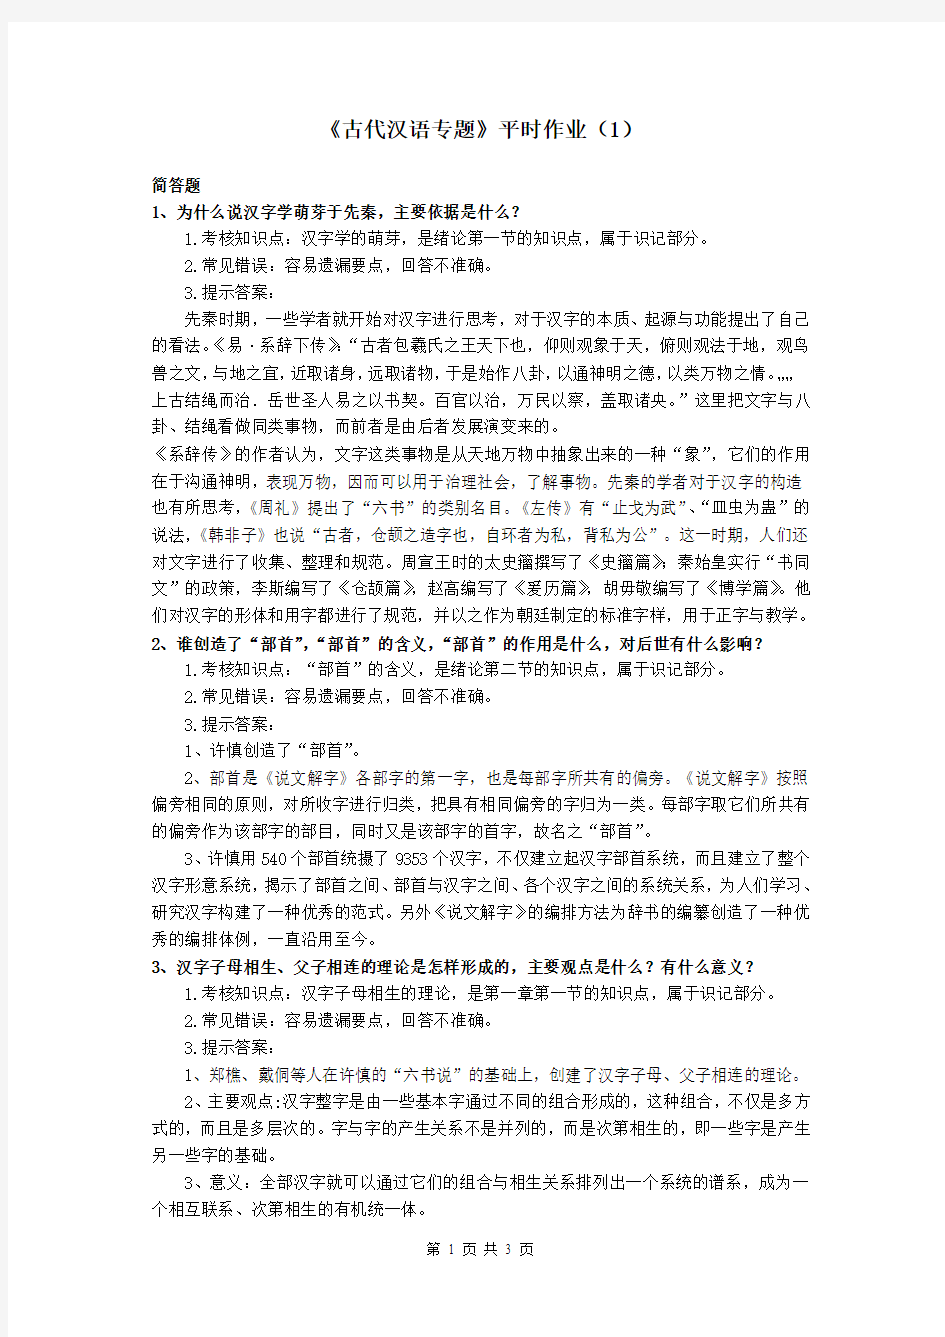 古代汉语专题平时作业1